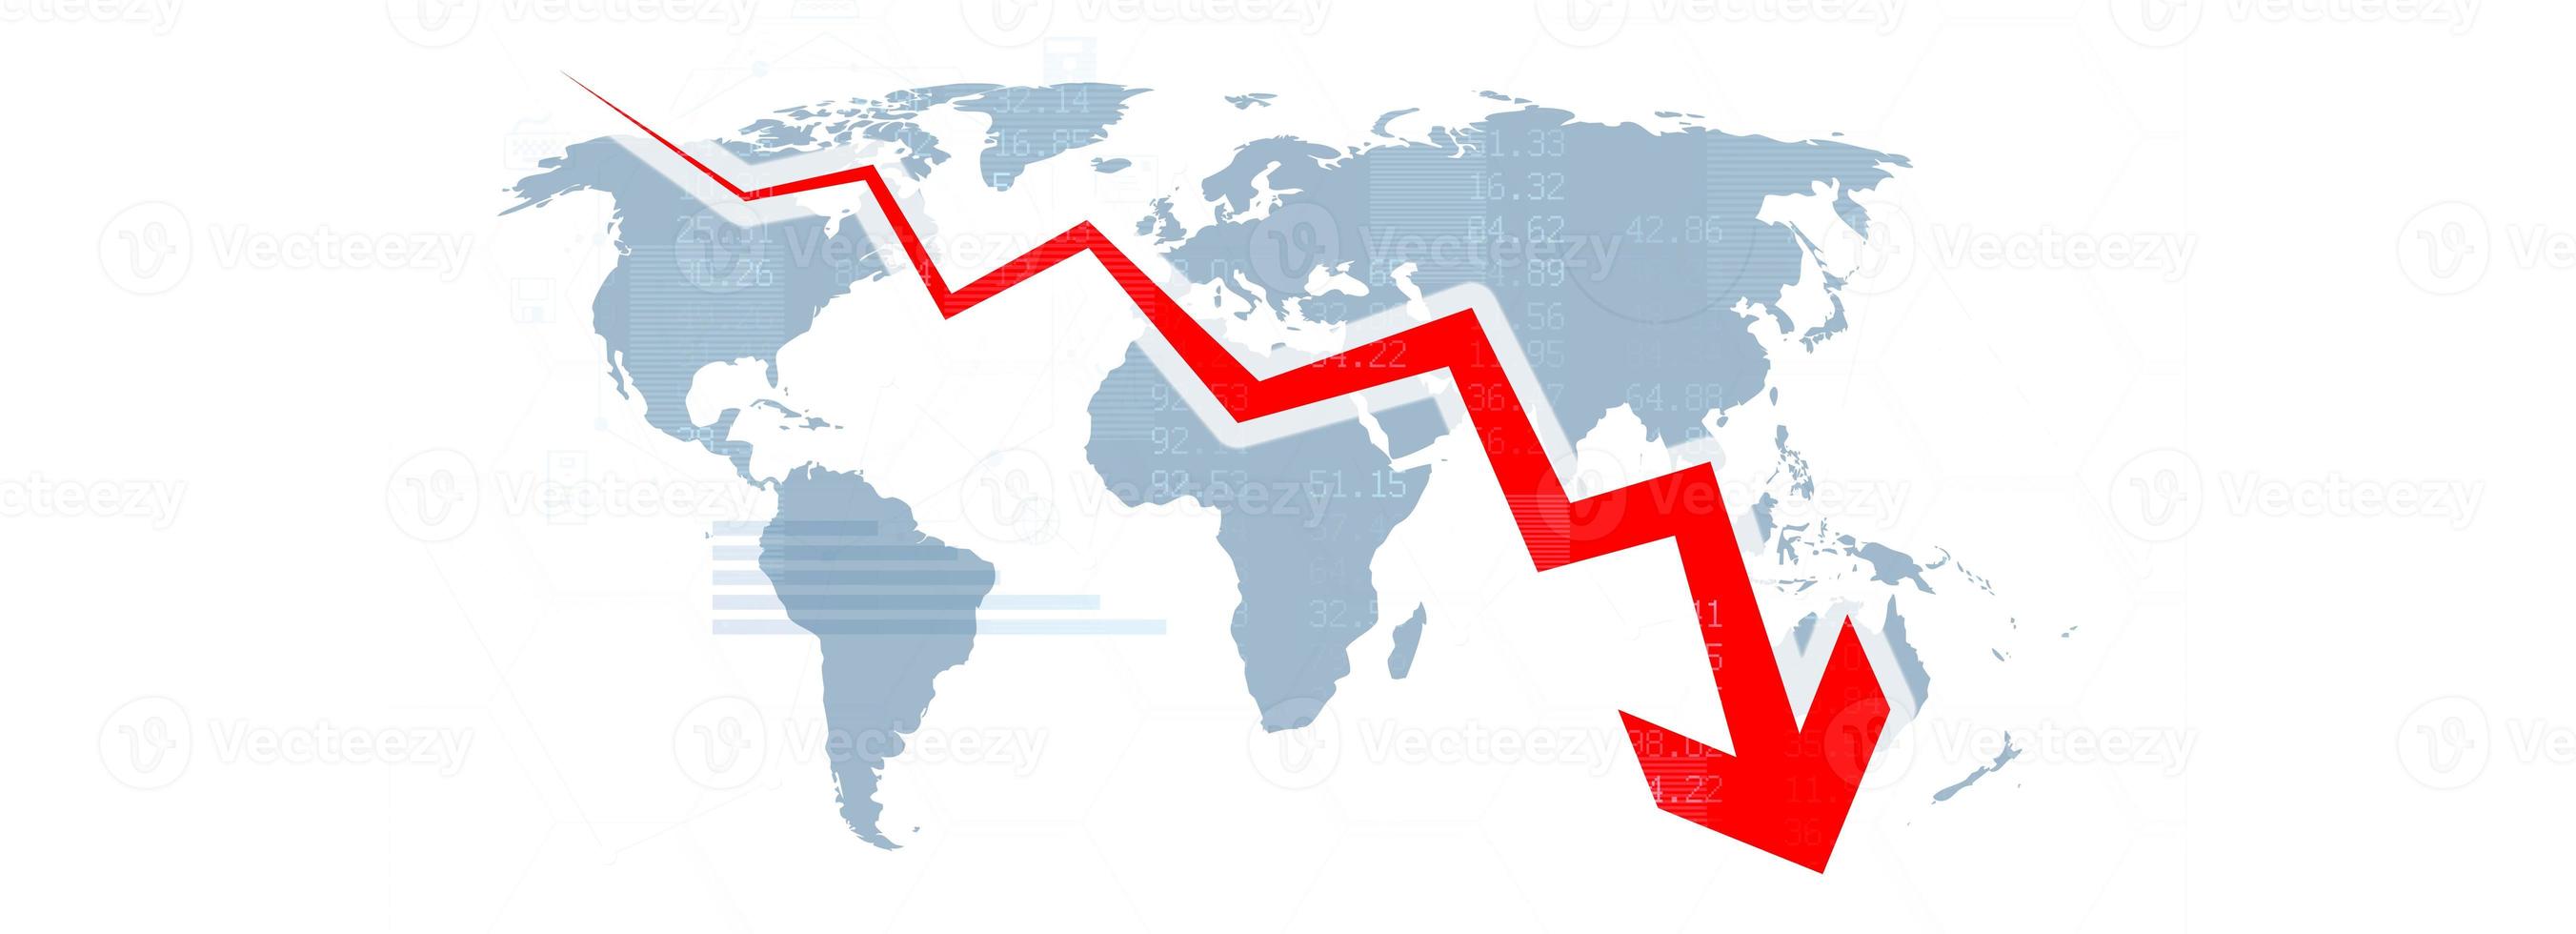 economisch crisisconcept. verspreid over de wereld, de economie is gedaald. 3d illustratie foto